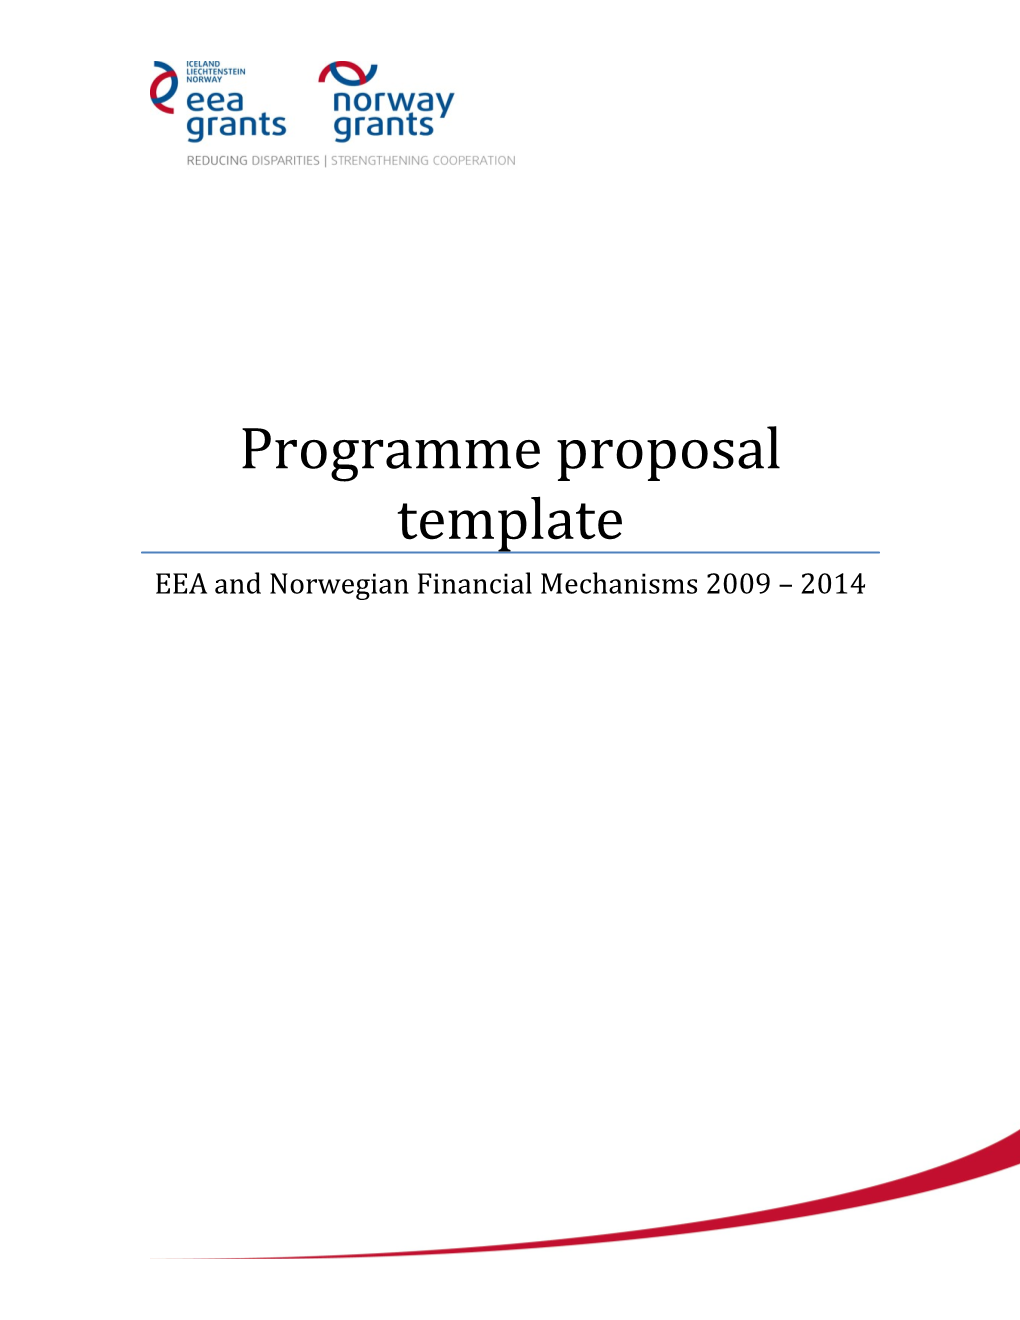 EEA and Norwegian Financial Mechanisms 2009-14